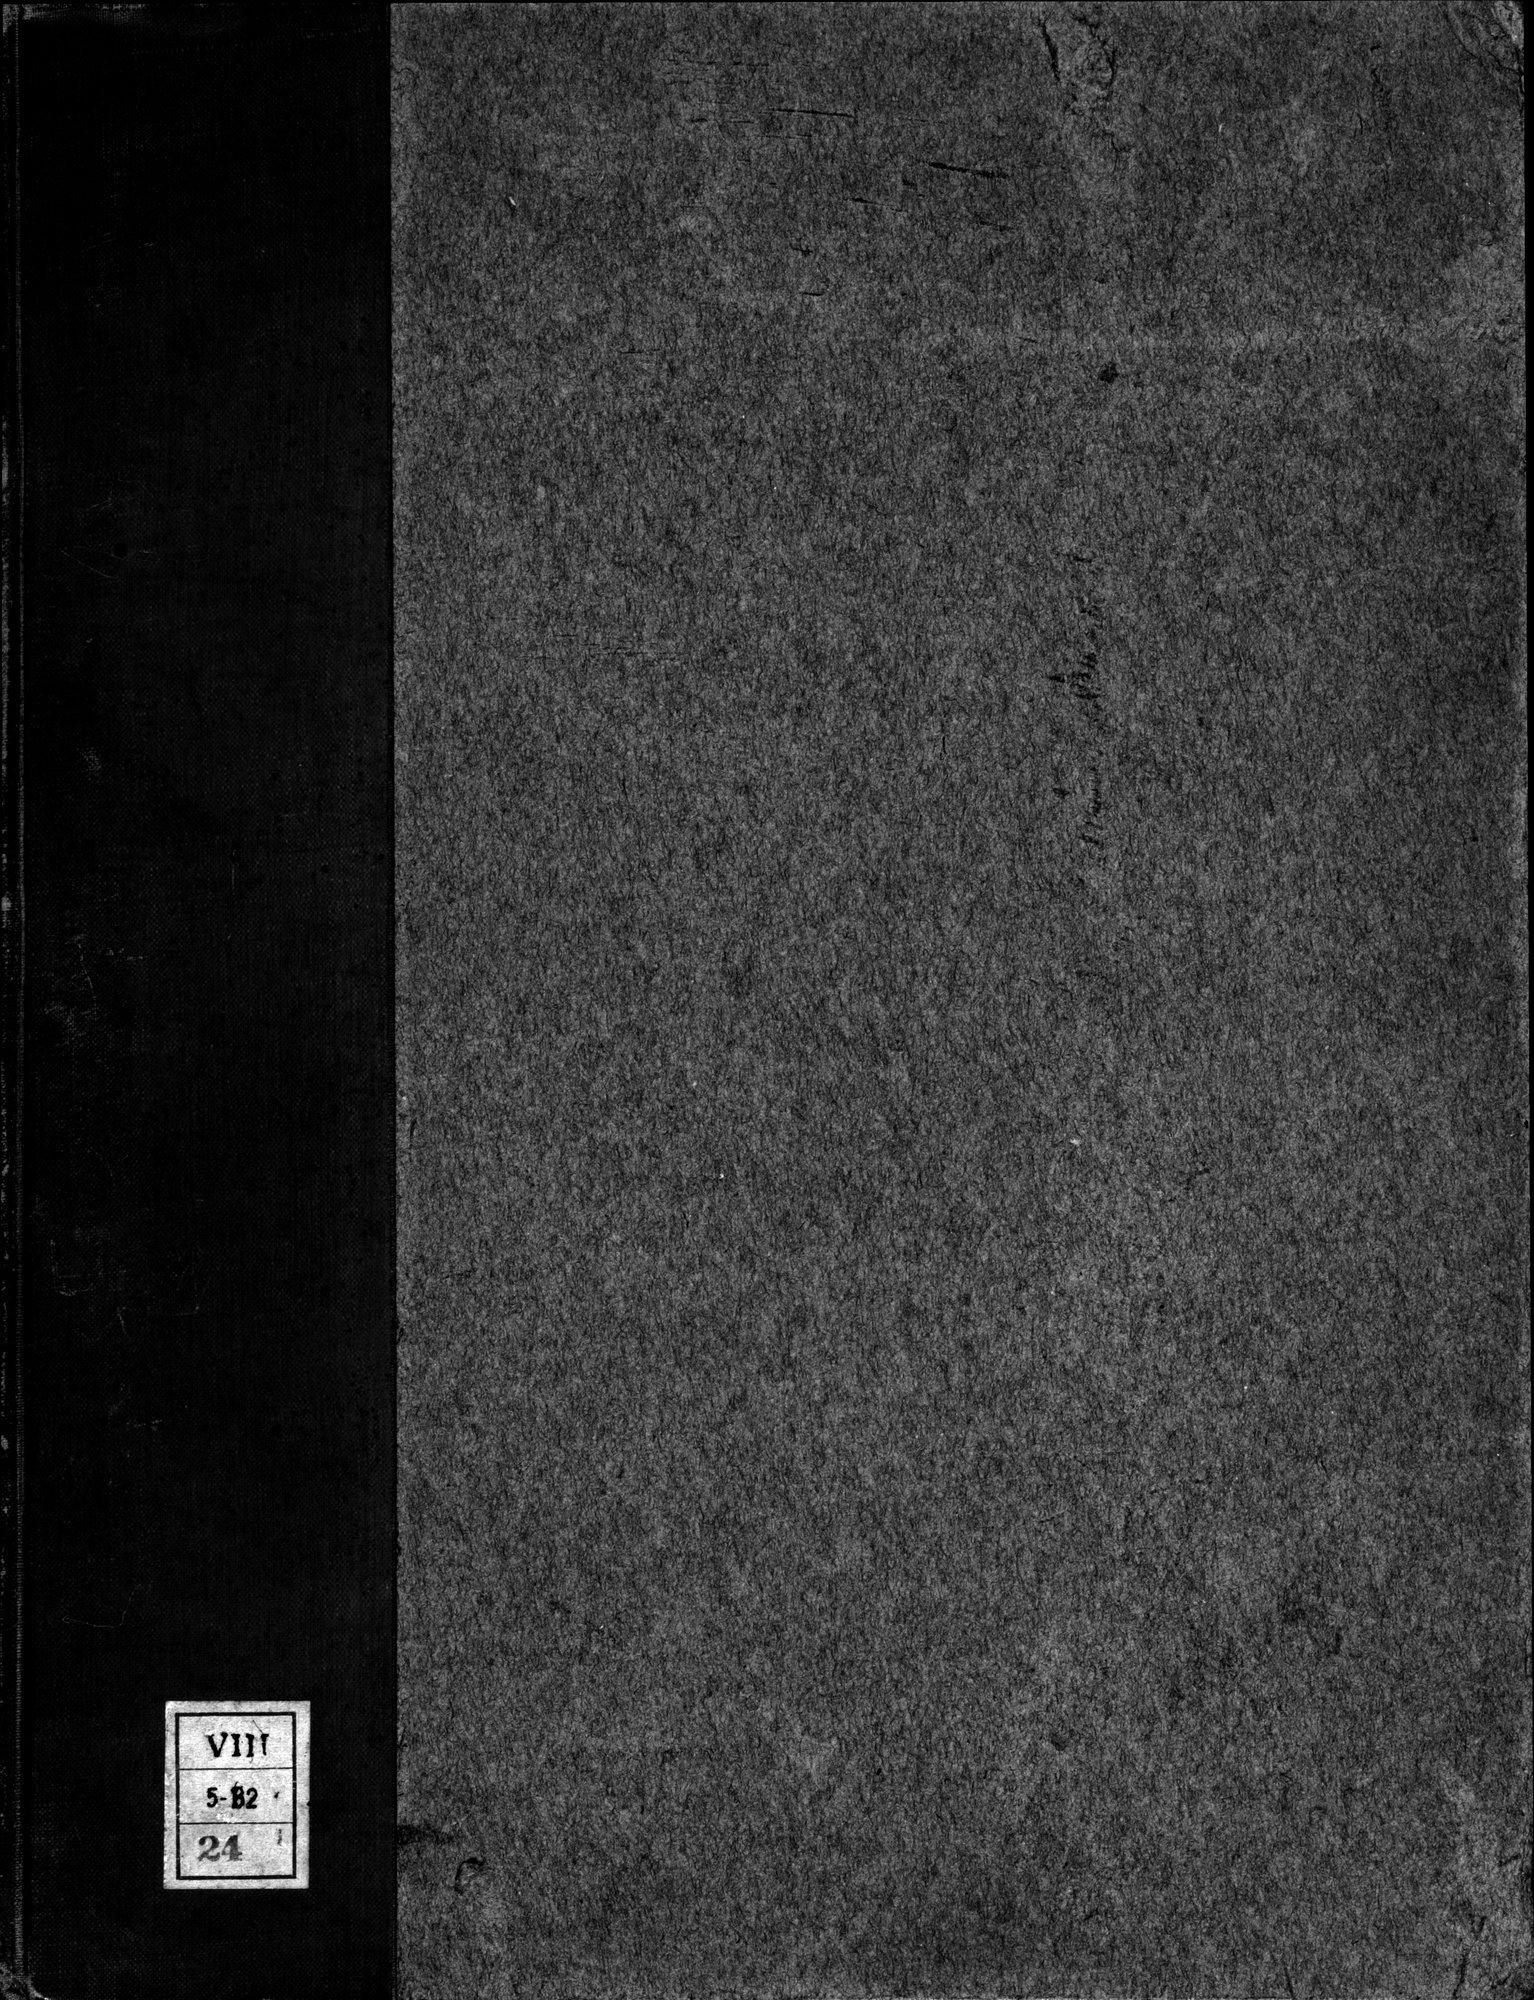 Recherches Archéologiques en Asie Centrale (1931) : vol.1 / Page 1 (Grayscale High Resolution Image)